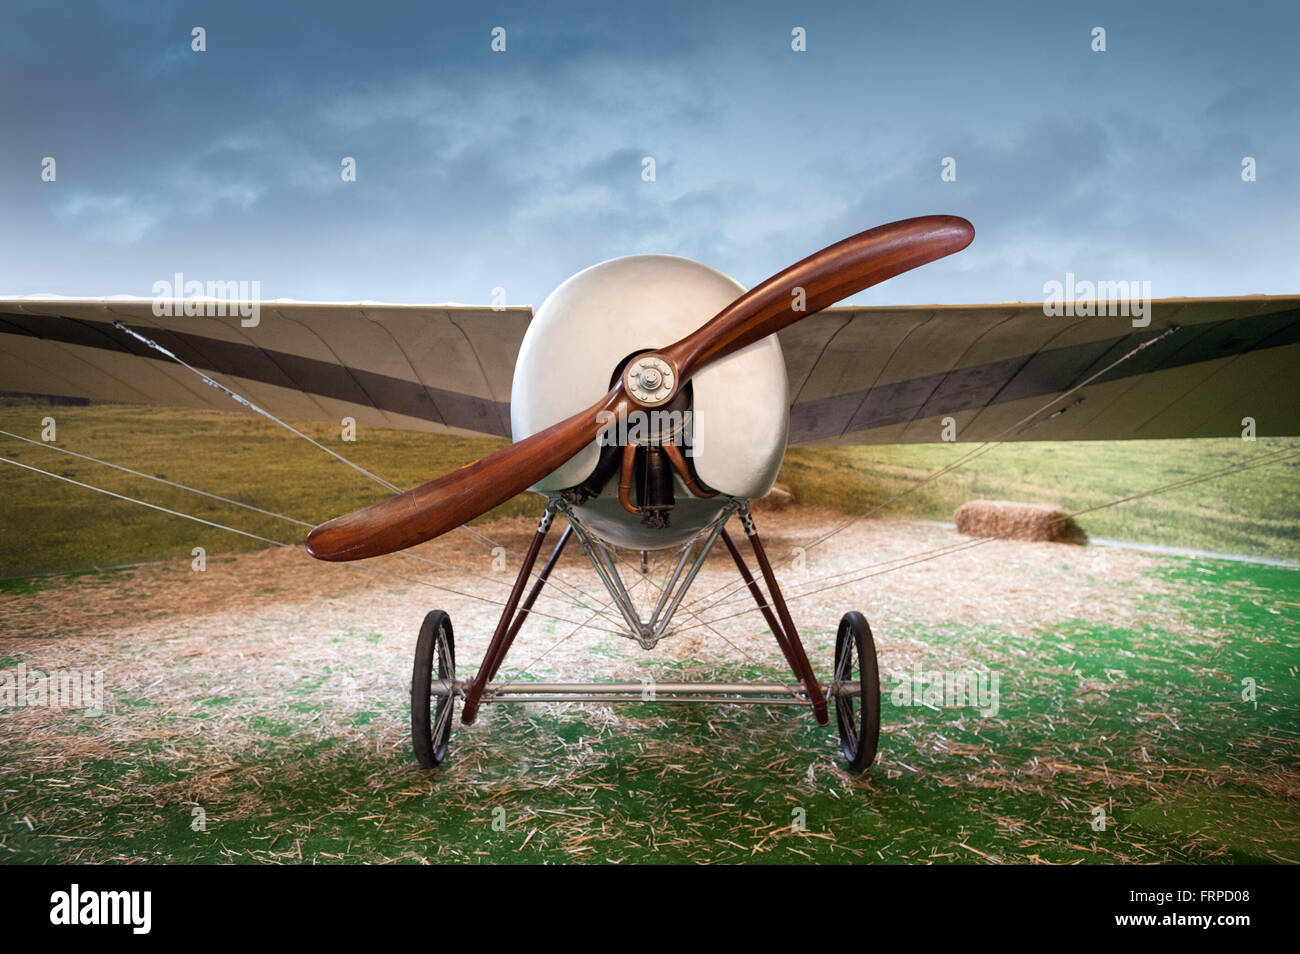 Alte Vintage Eindecker-Flugzeug mit einem hölzernen Propeller geparkt in einem Feld in einer Landschaft, Vorderansicht Stockfoto